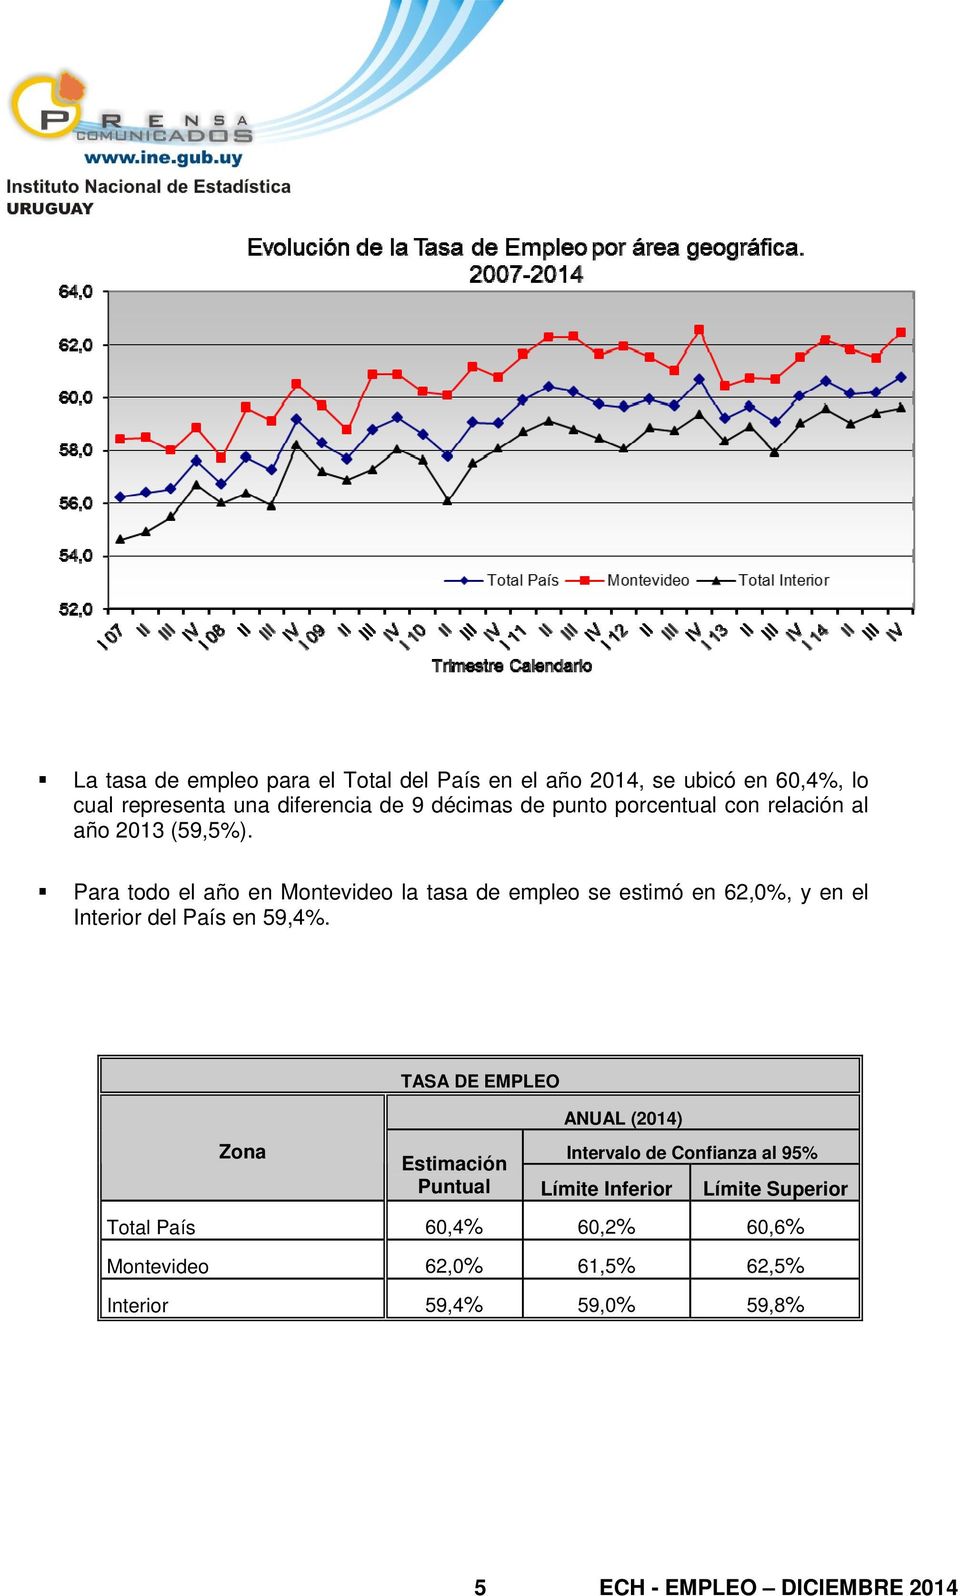 Para todo el año en Montevideo la tasa de empleo se estimó en 62,0%, y en el Interior del País en 59,4%.